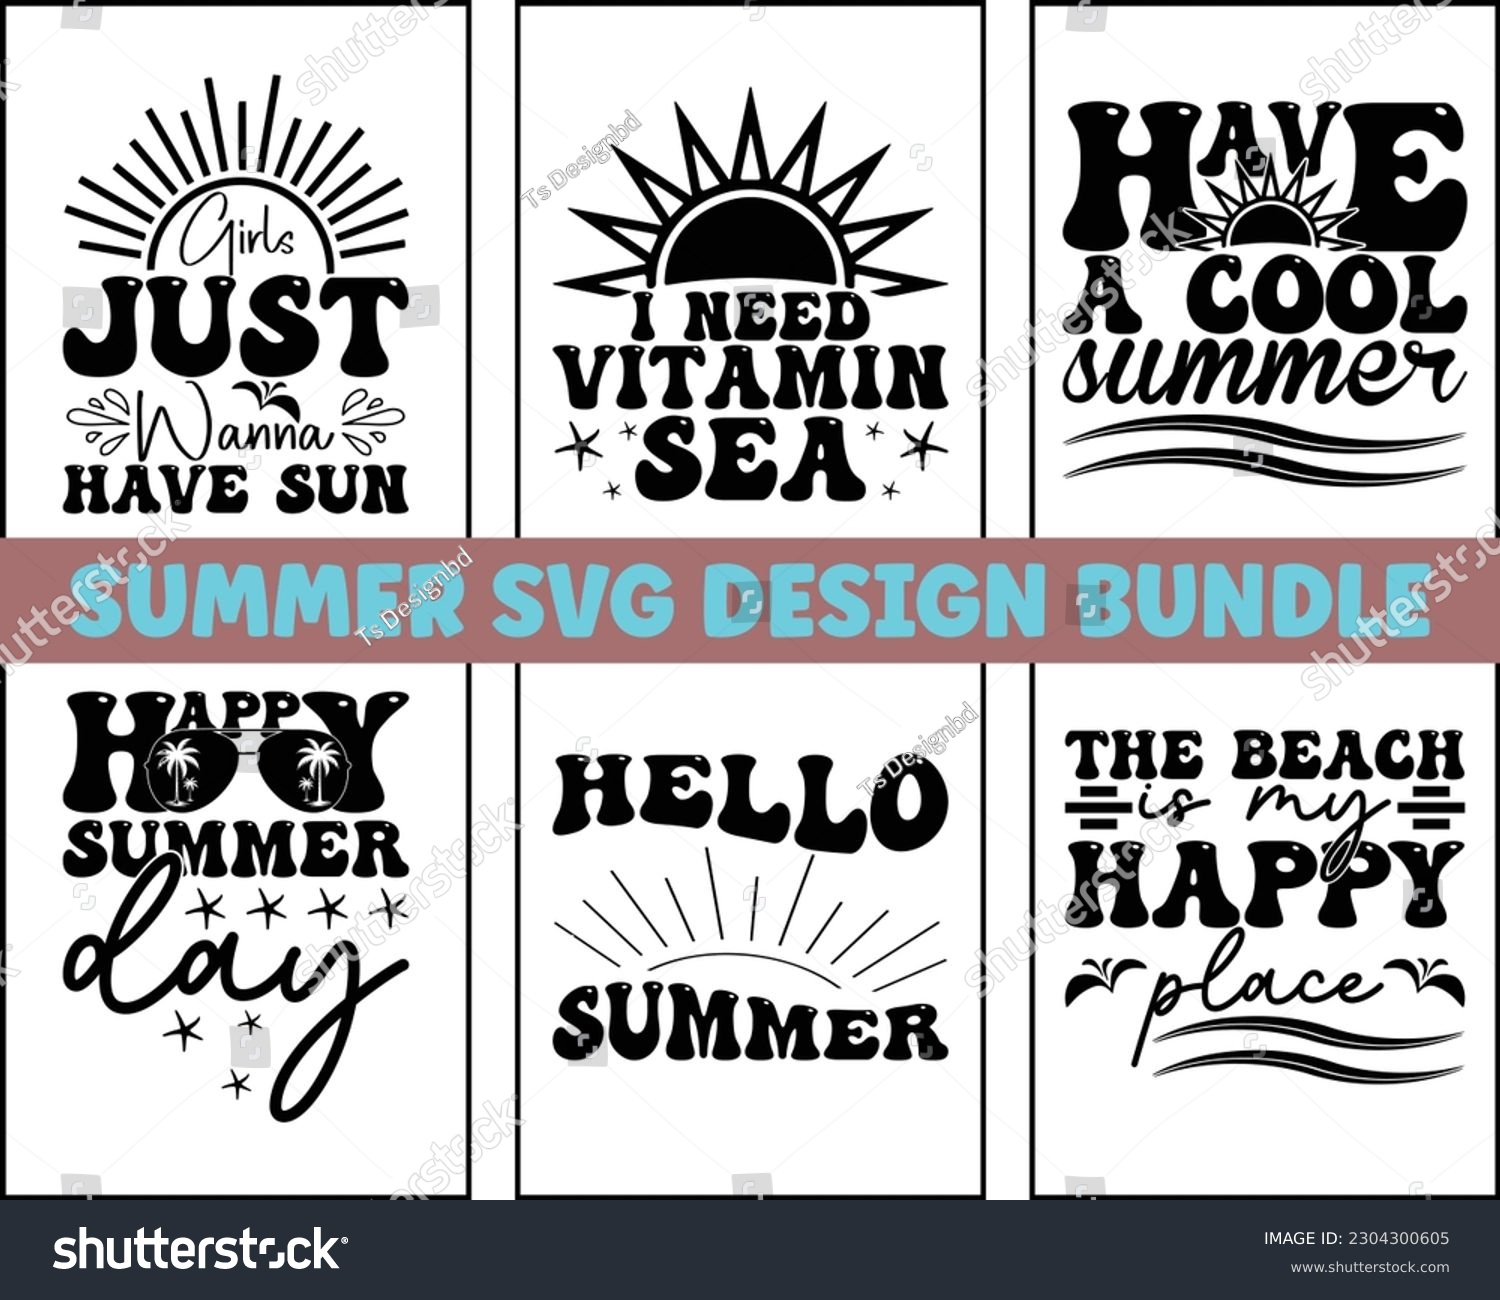 SVG of summer SVG design bundle Cut Files,Summer Quotes SVG Designs Bundle,Funny Summer quotes SVG cut files bundle,Hello Summer quotes t shirt designs bundle, beach cut files svg